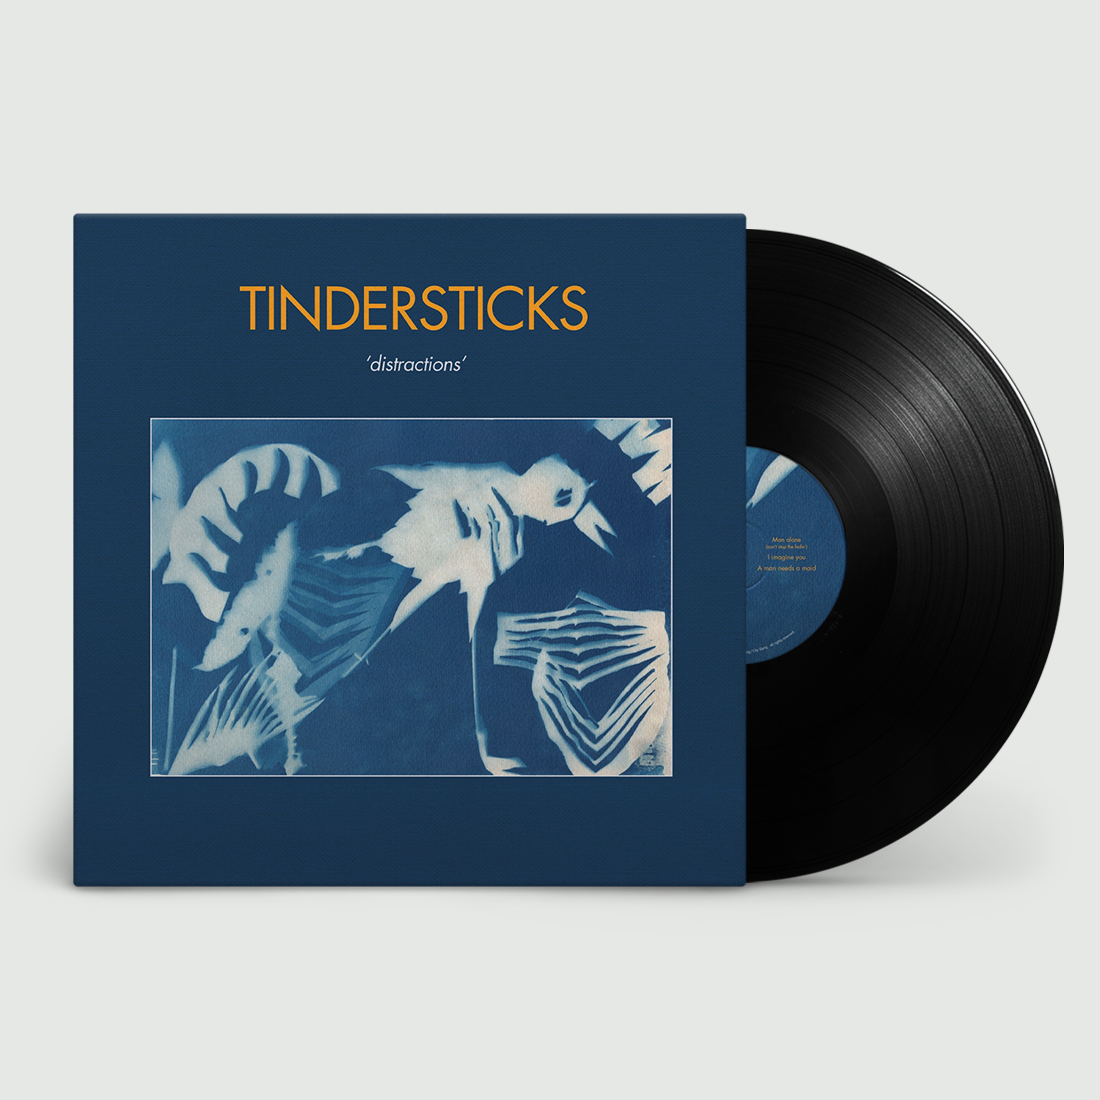 Tindersticks - Distractions: Vinyl LP